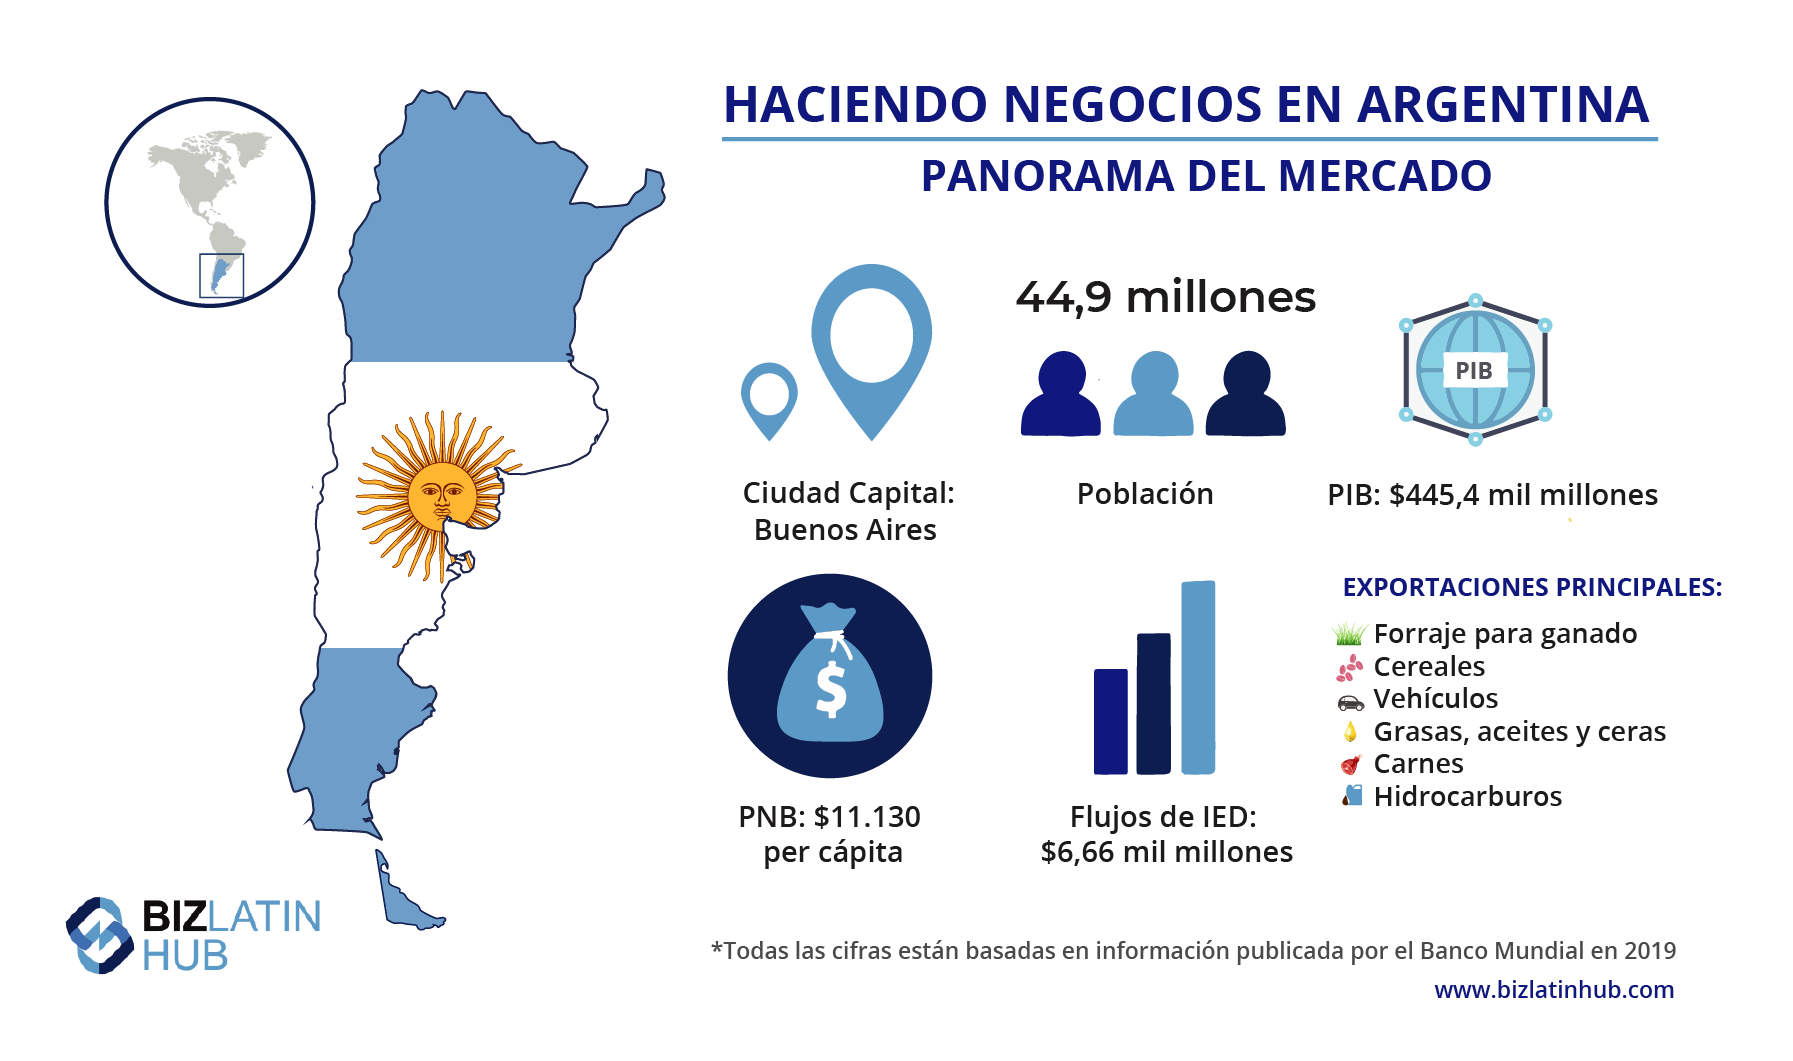 Instantánea del mercado argentino, información que puede ser util si estas buscando cómo obtener una dirección fiscal en Argentina